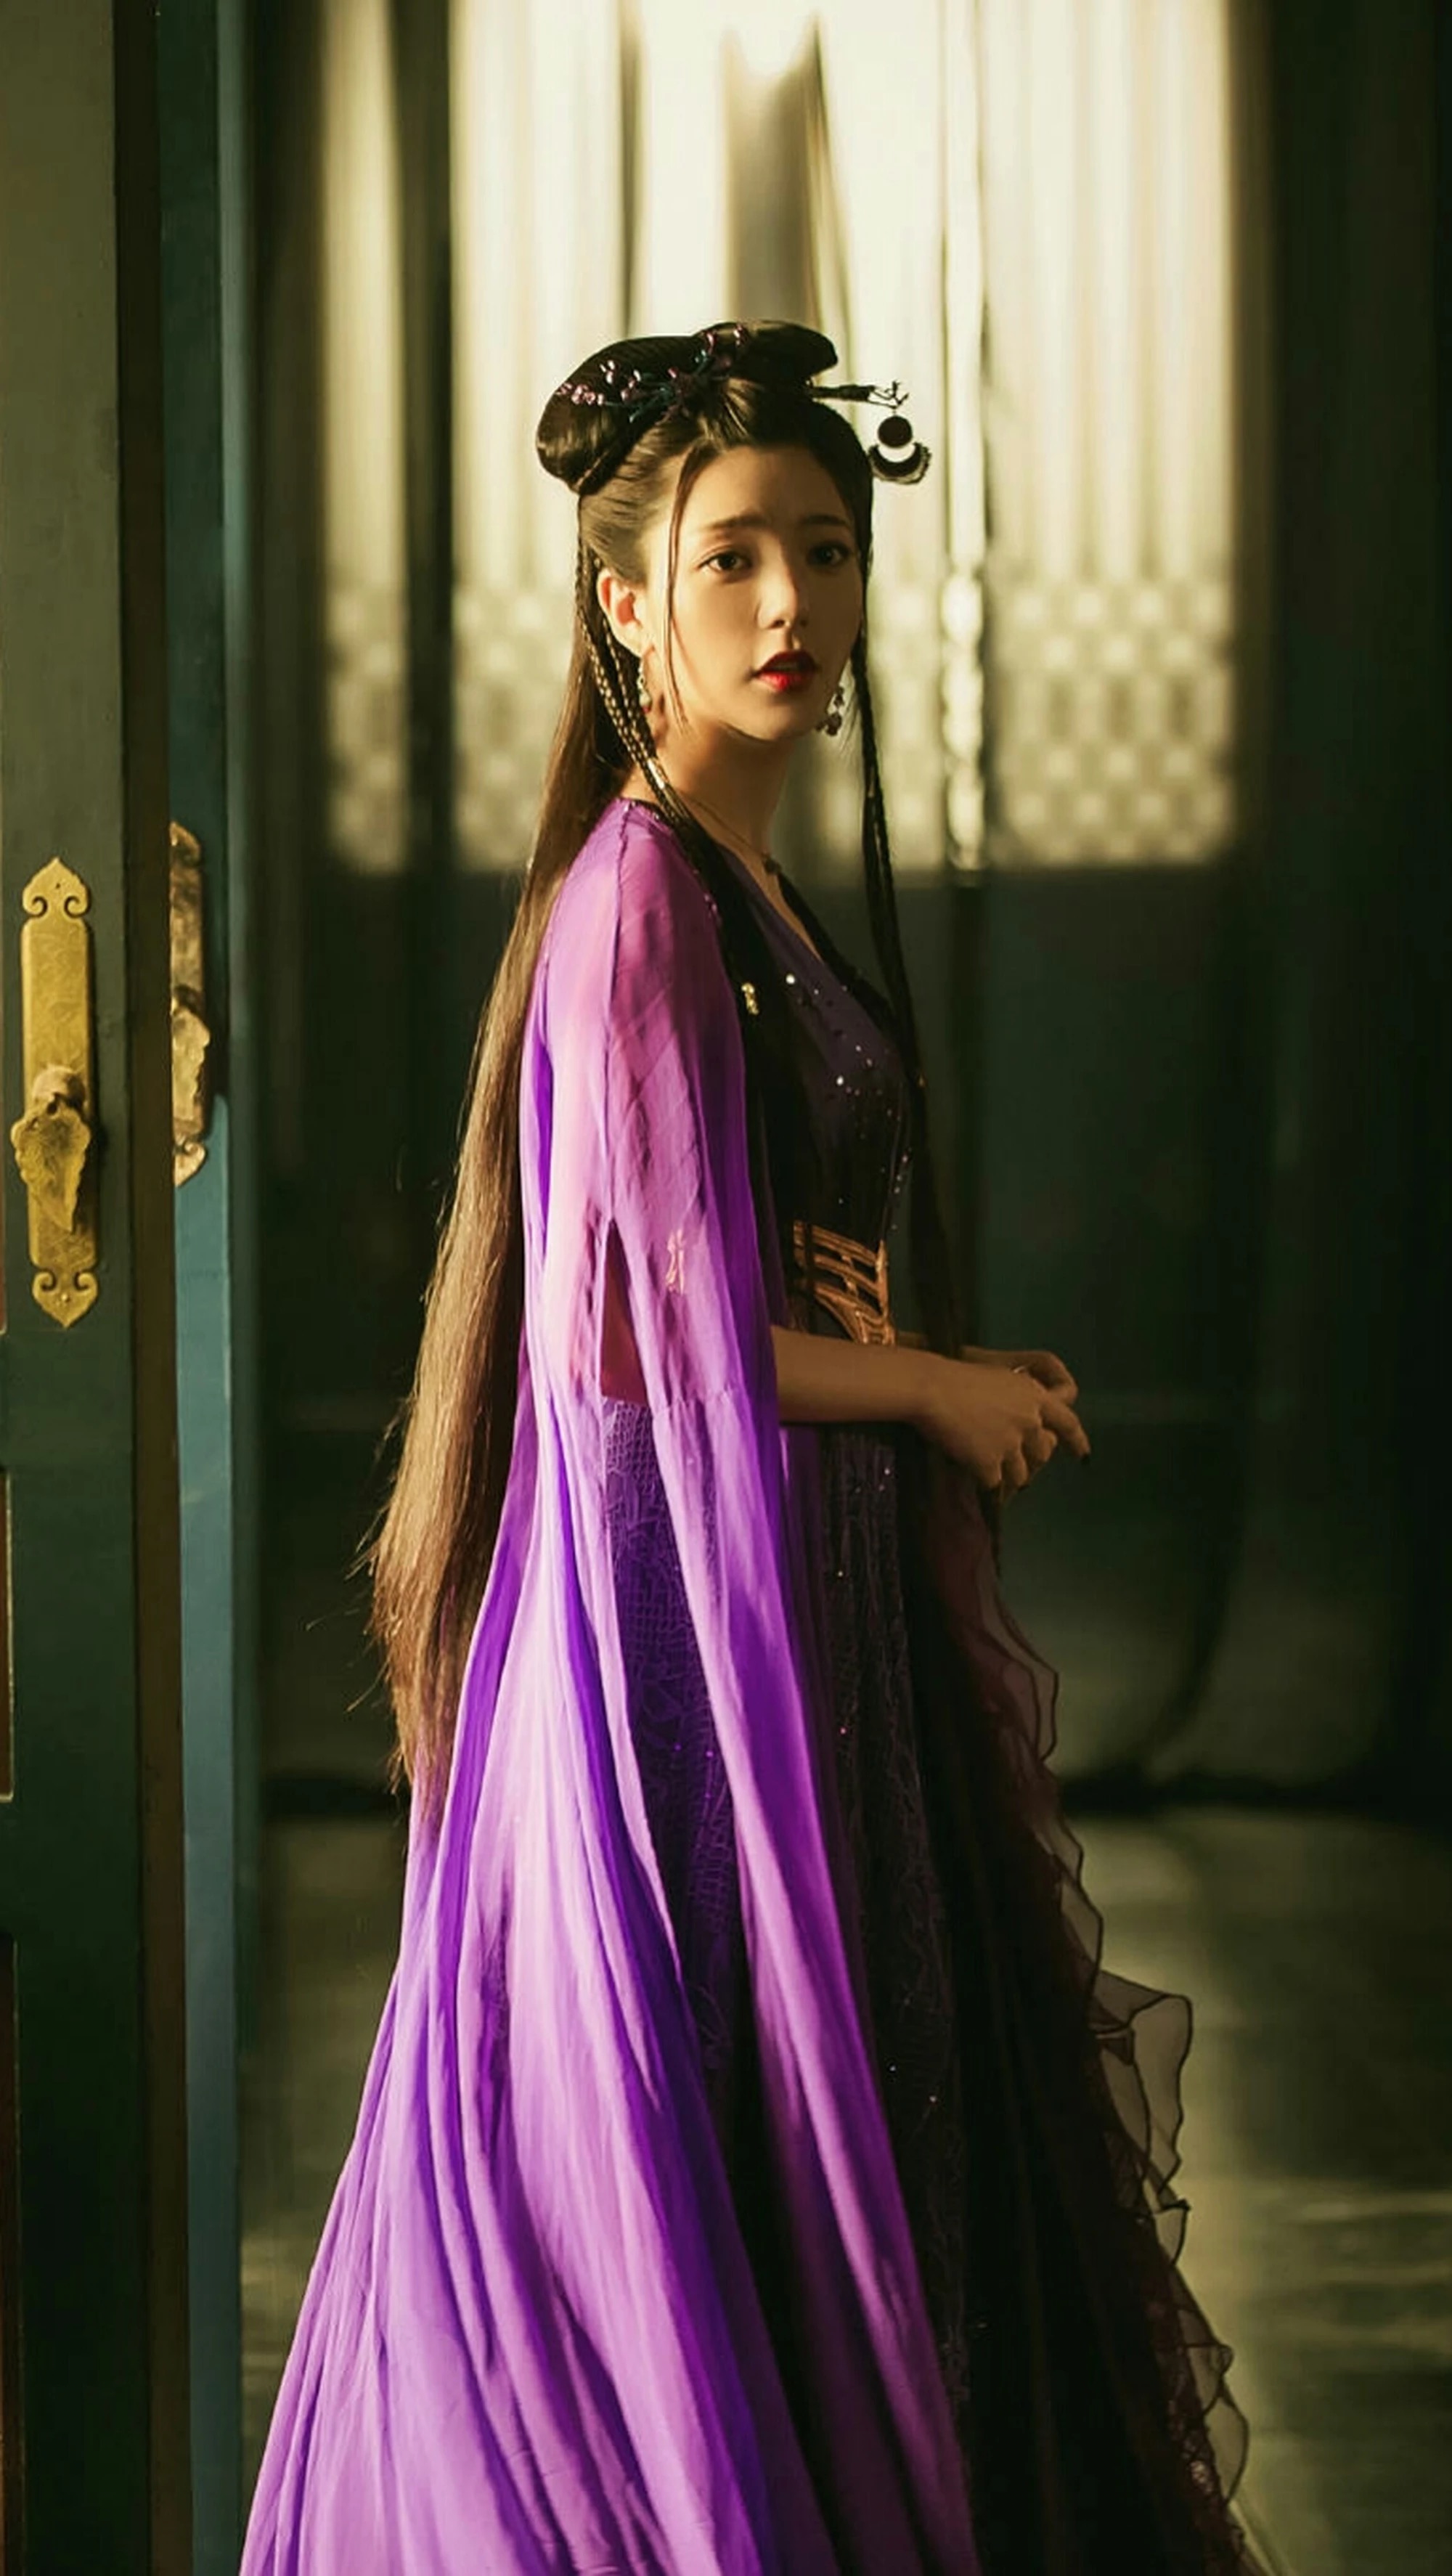 原创媚者无疆最美不是李一桐而是一袭紫衣神秘妩媚的她